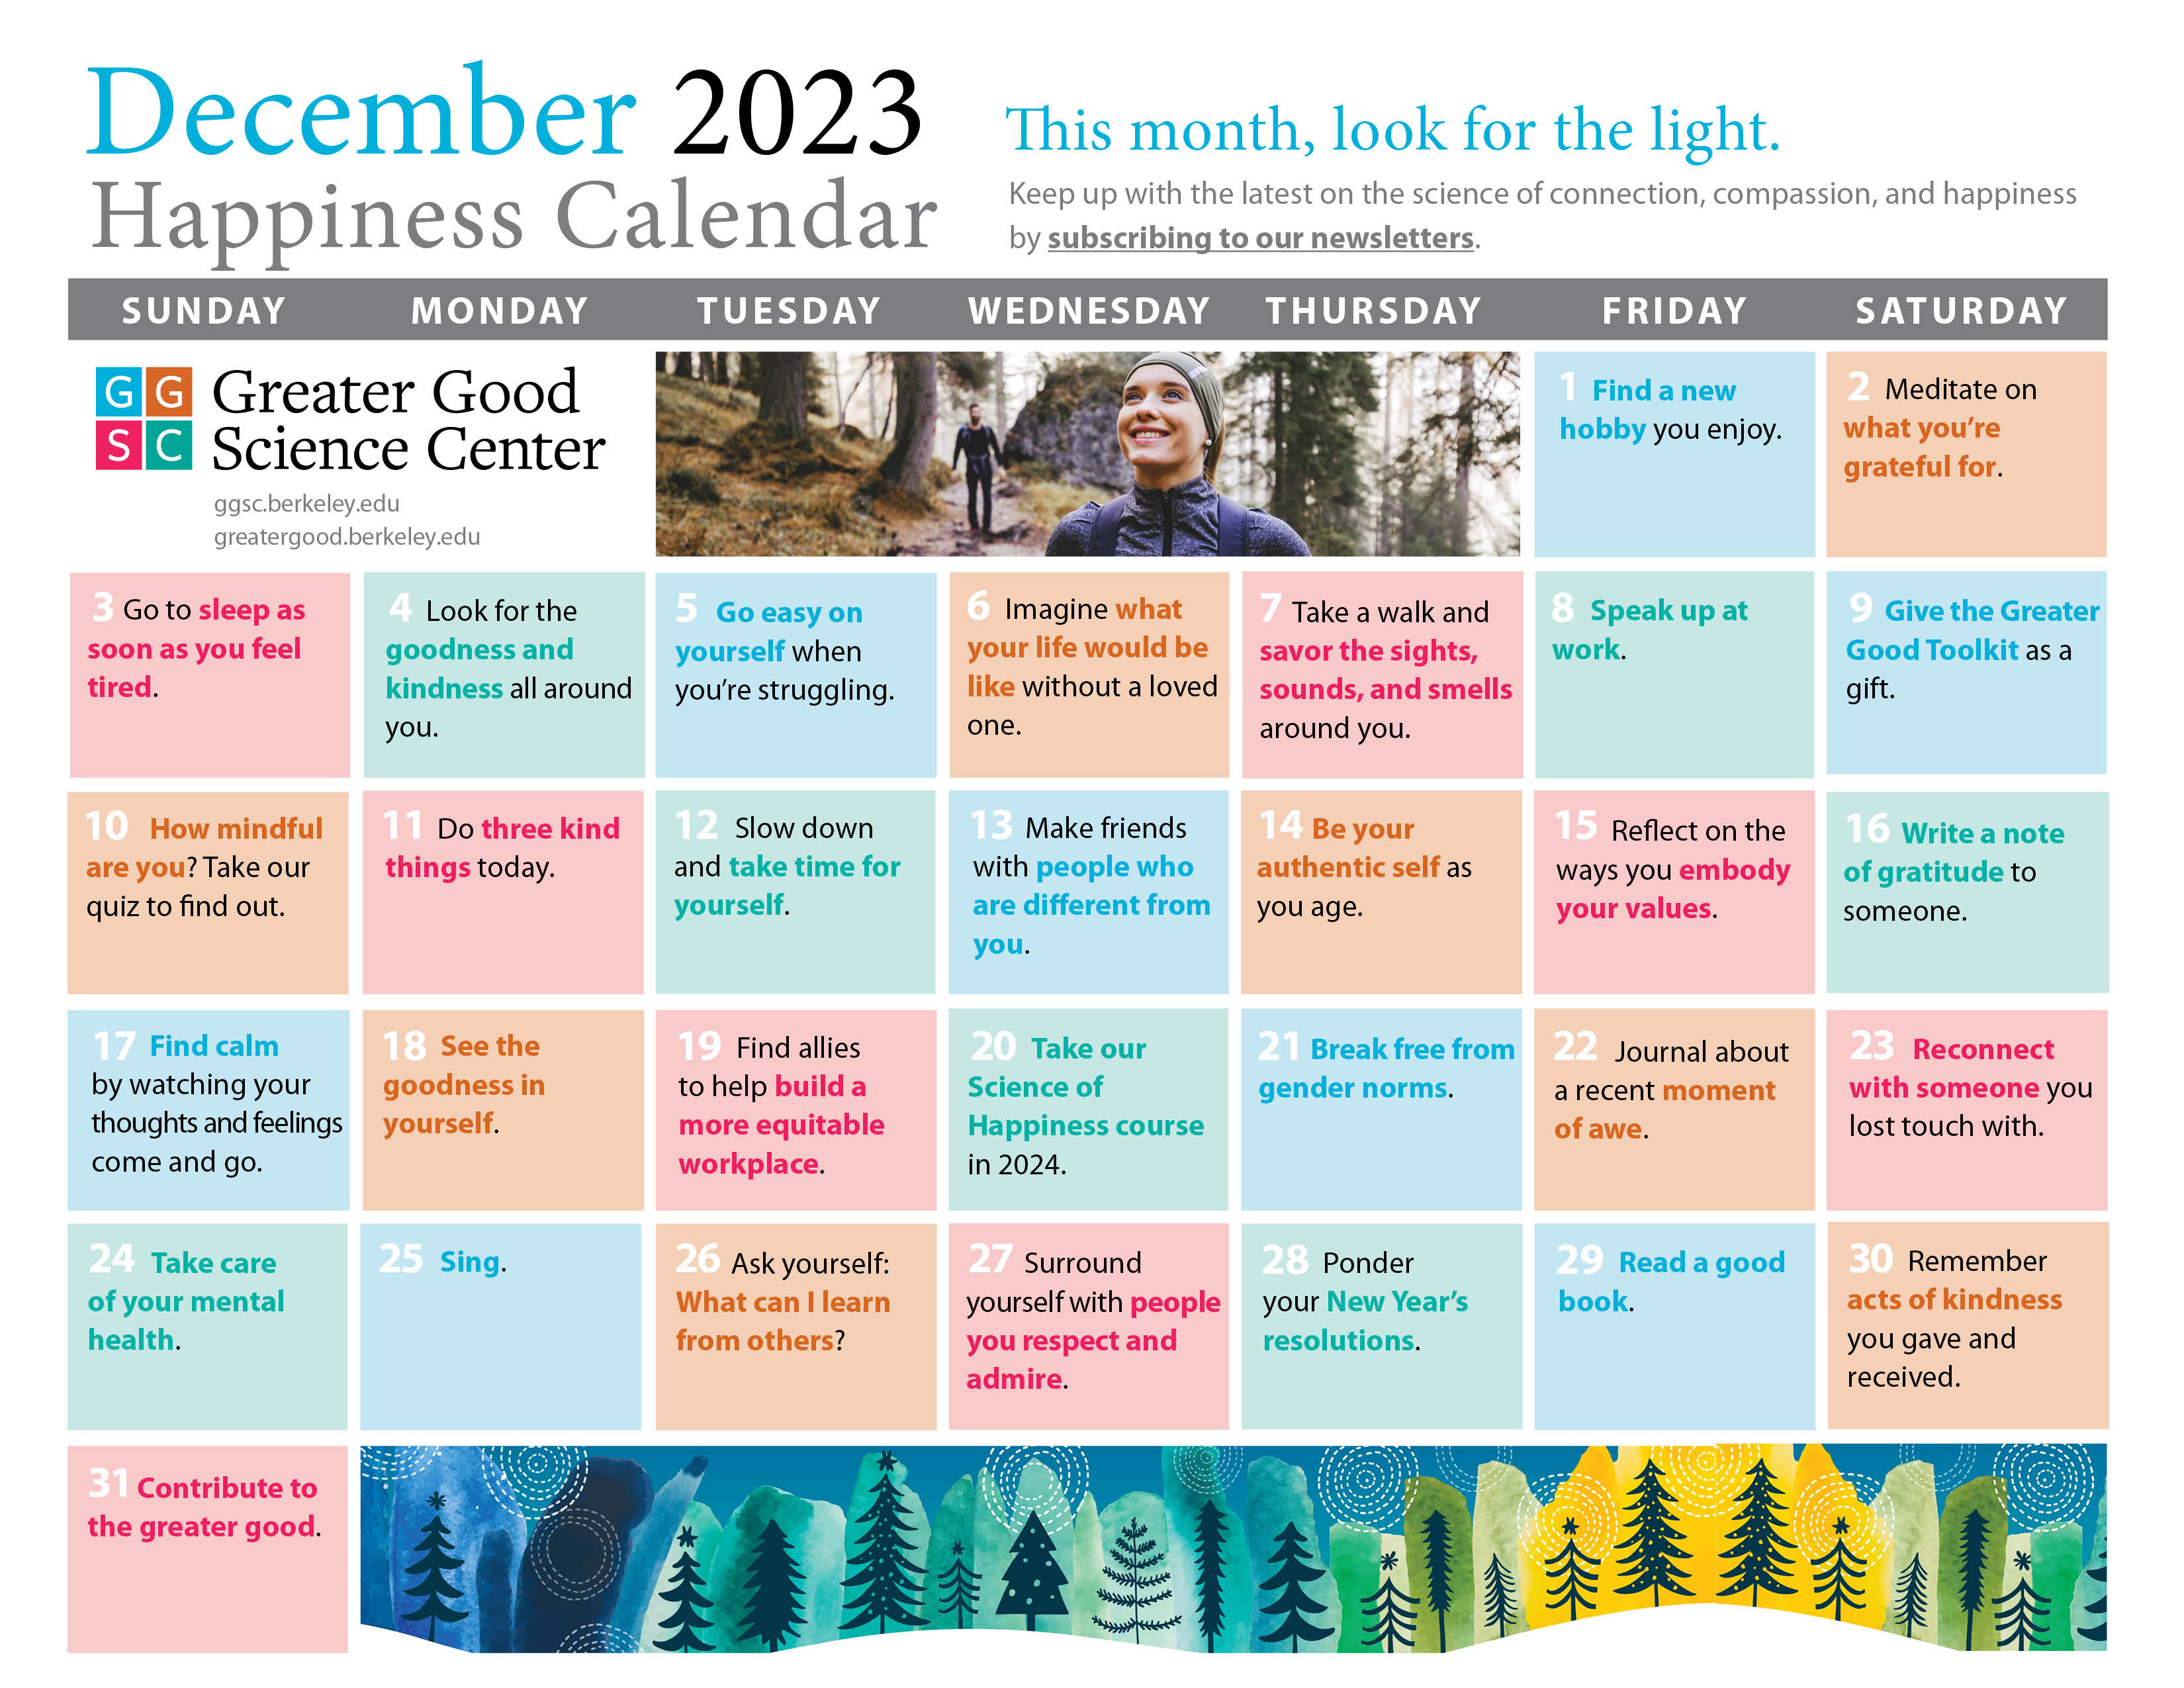 December 2023 happiness calendar